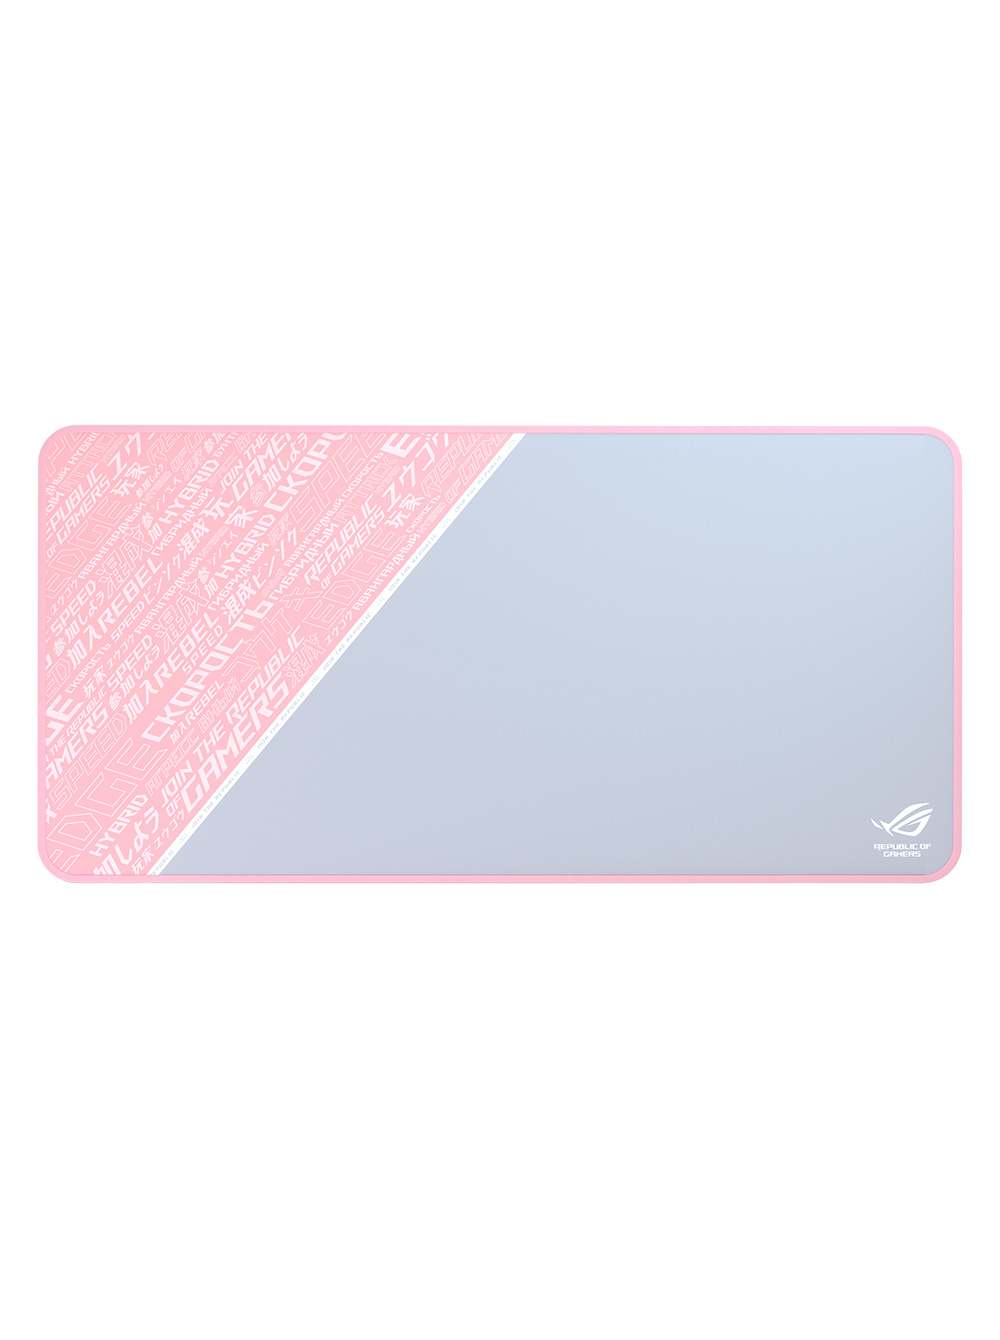 Asus Rog Sheath Pnk Ltd Grey Pink White Gaming Mouse Pad